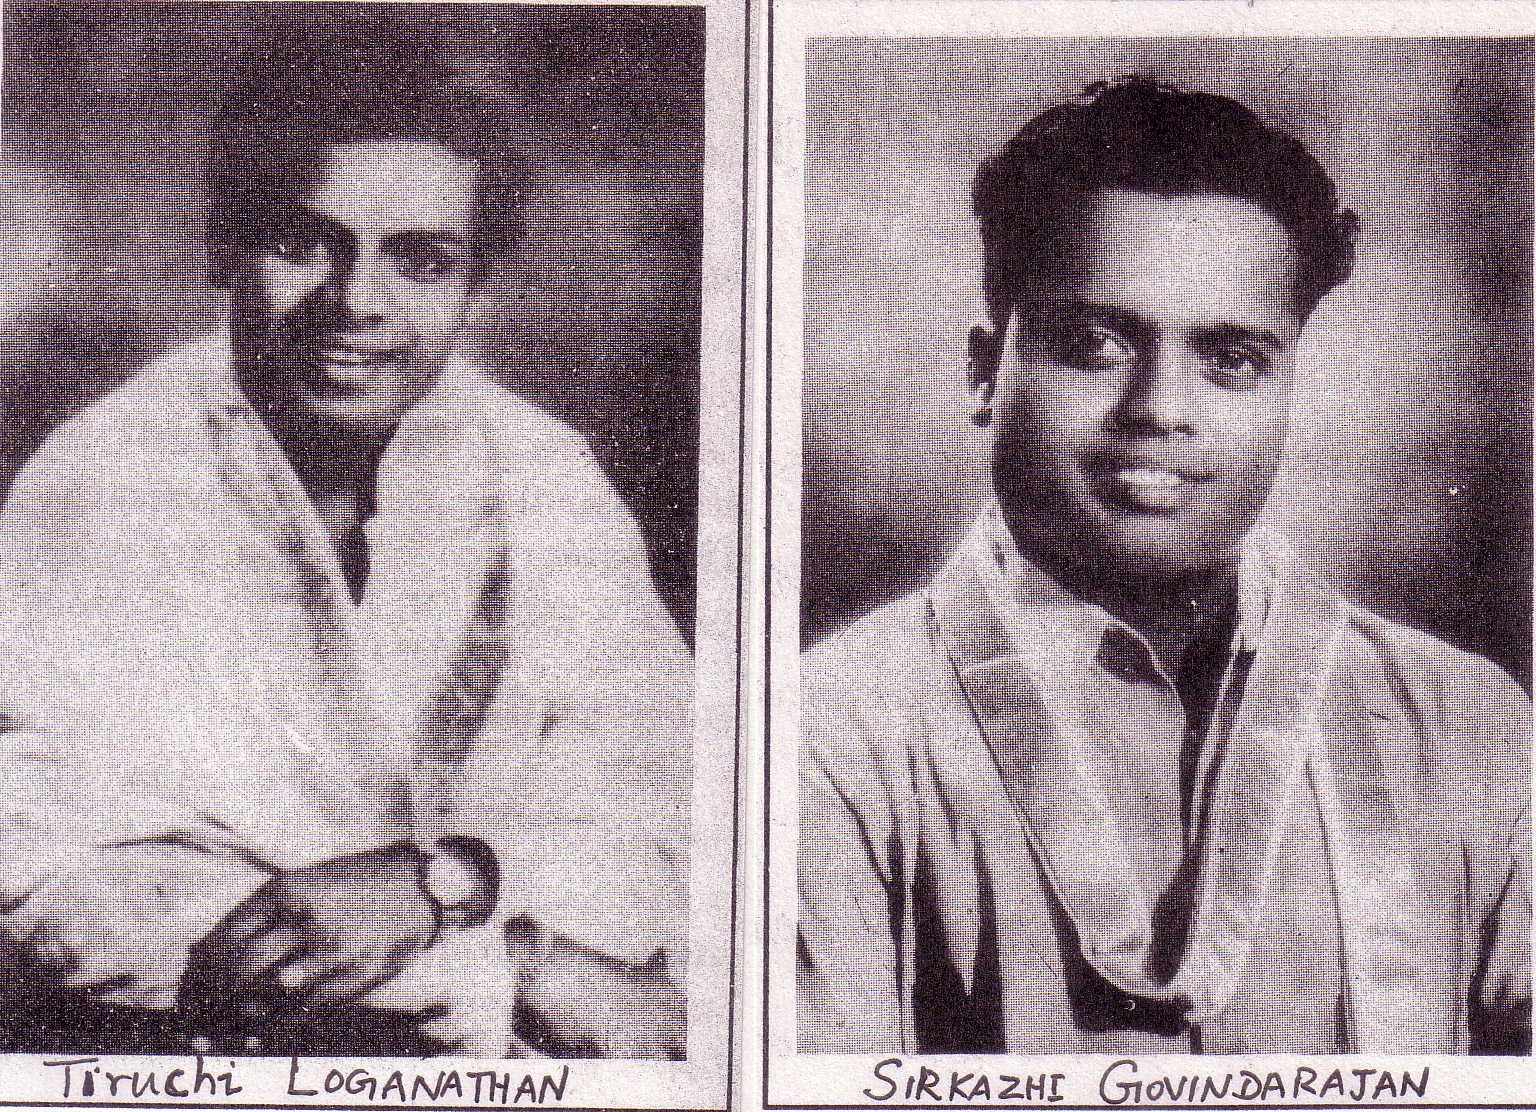 Tiruchi Loganathan and Sirkazhi Govindarajan